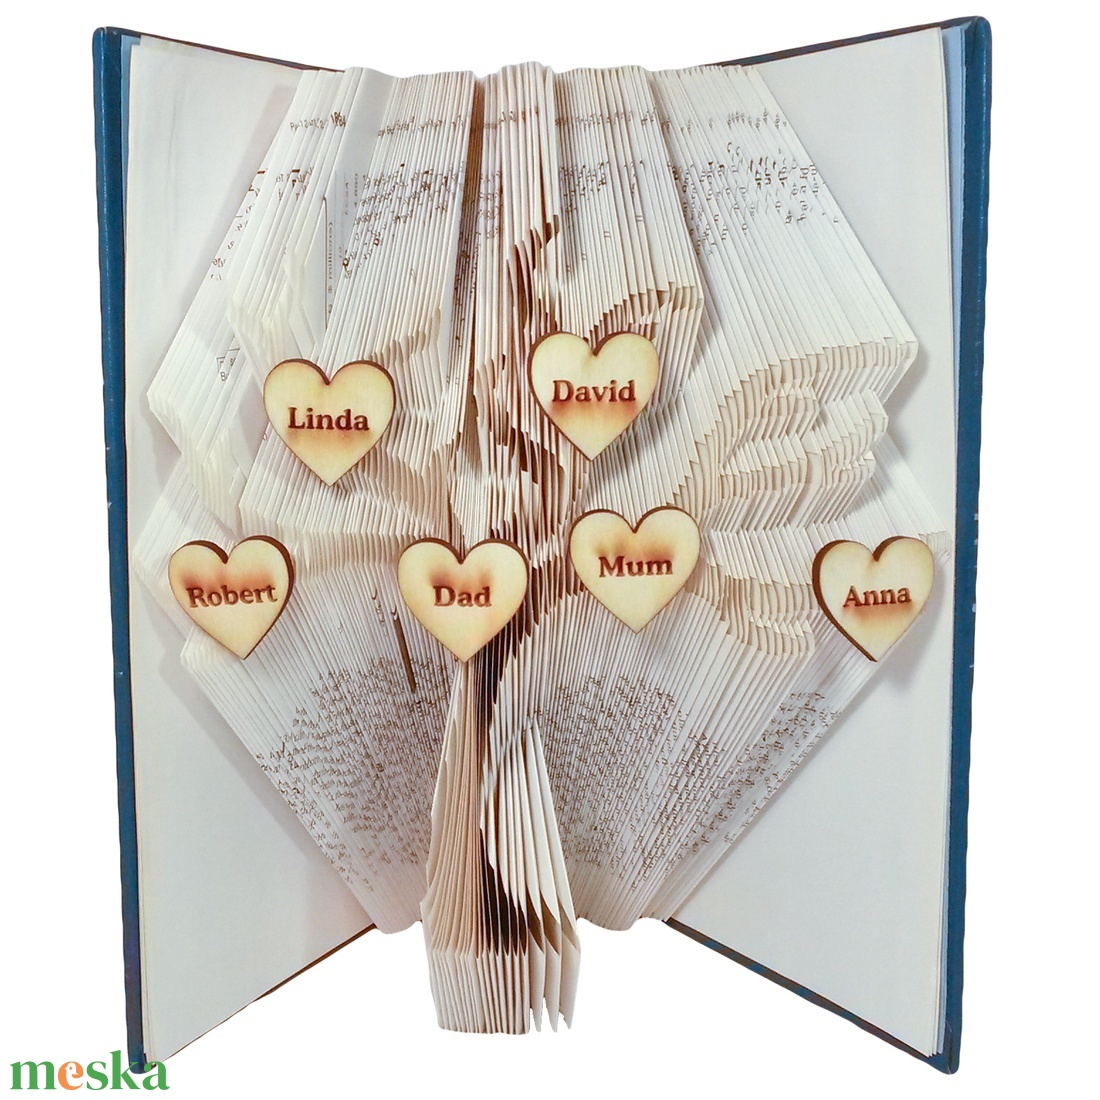 Családfa mintájú hajtogatott könyv origami-könyvszobor-anya-apa-papa-mama-gyerek-nagyszülők-dédszülők - E246 - otthon & lakás - dekoráció - Meska.hu